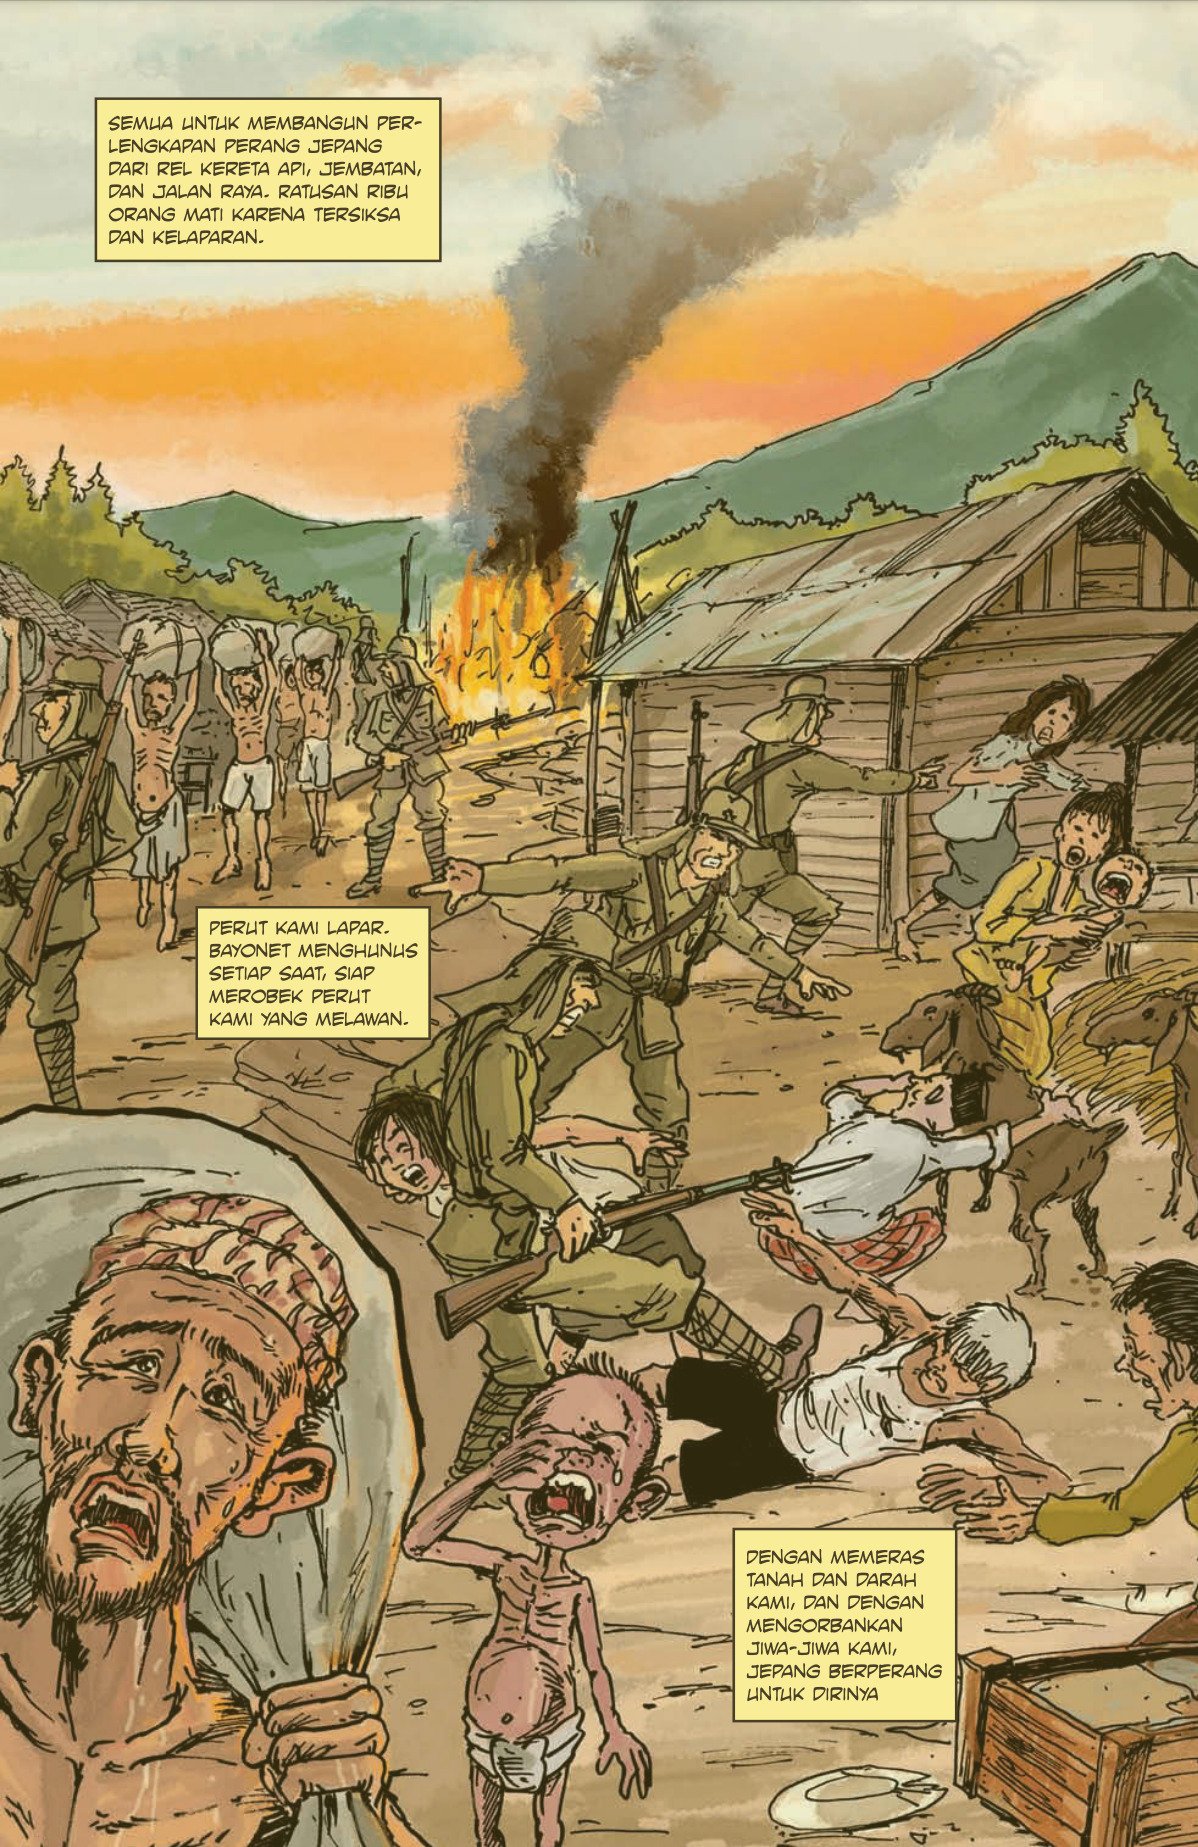 Taka 日本が登場するインドネシアの漫画 13年出版の Komando Rajawali 第1巻より インドネシアへ進駐した日本軍と虐げられる現地住民 ナレーションの翻訳は以下のツイートで T Co Jhdxw37bf8 Twitter